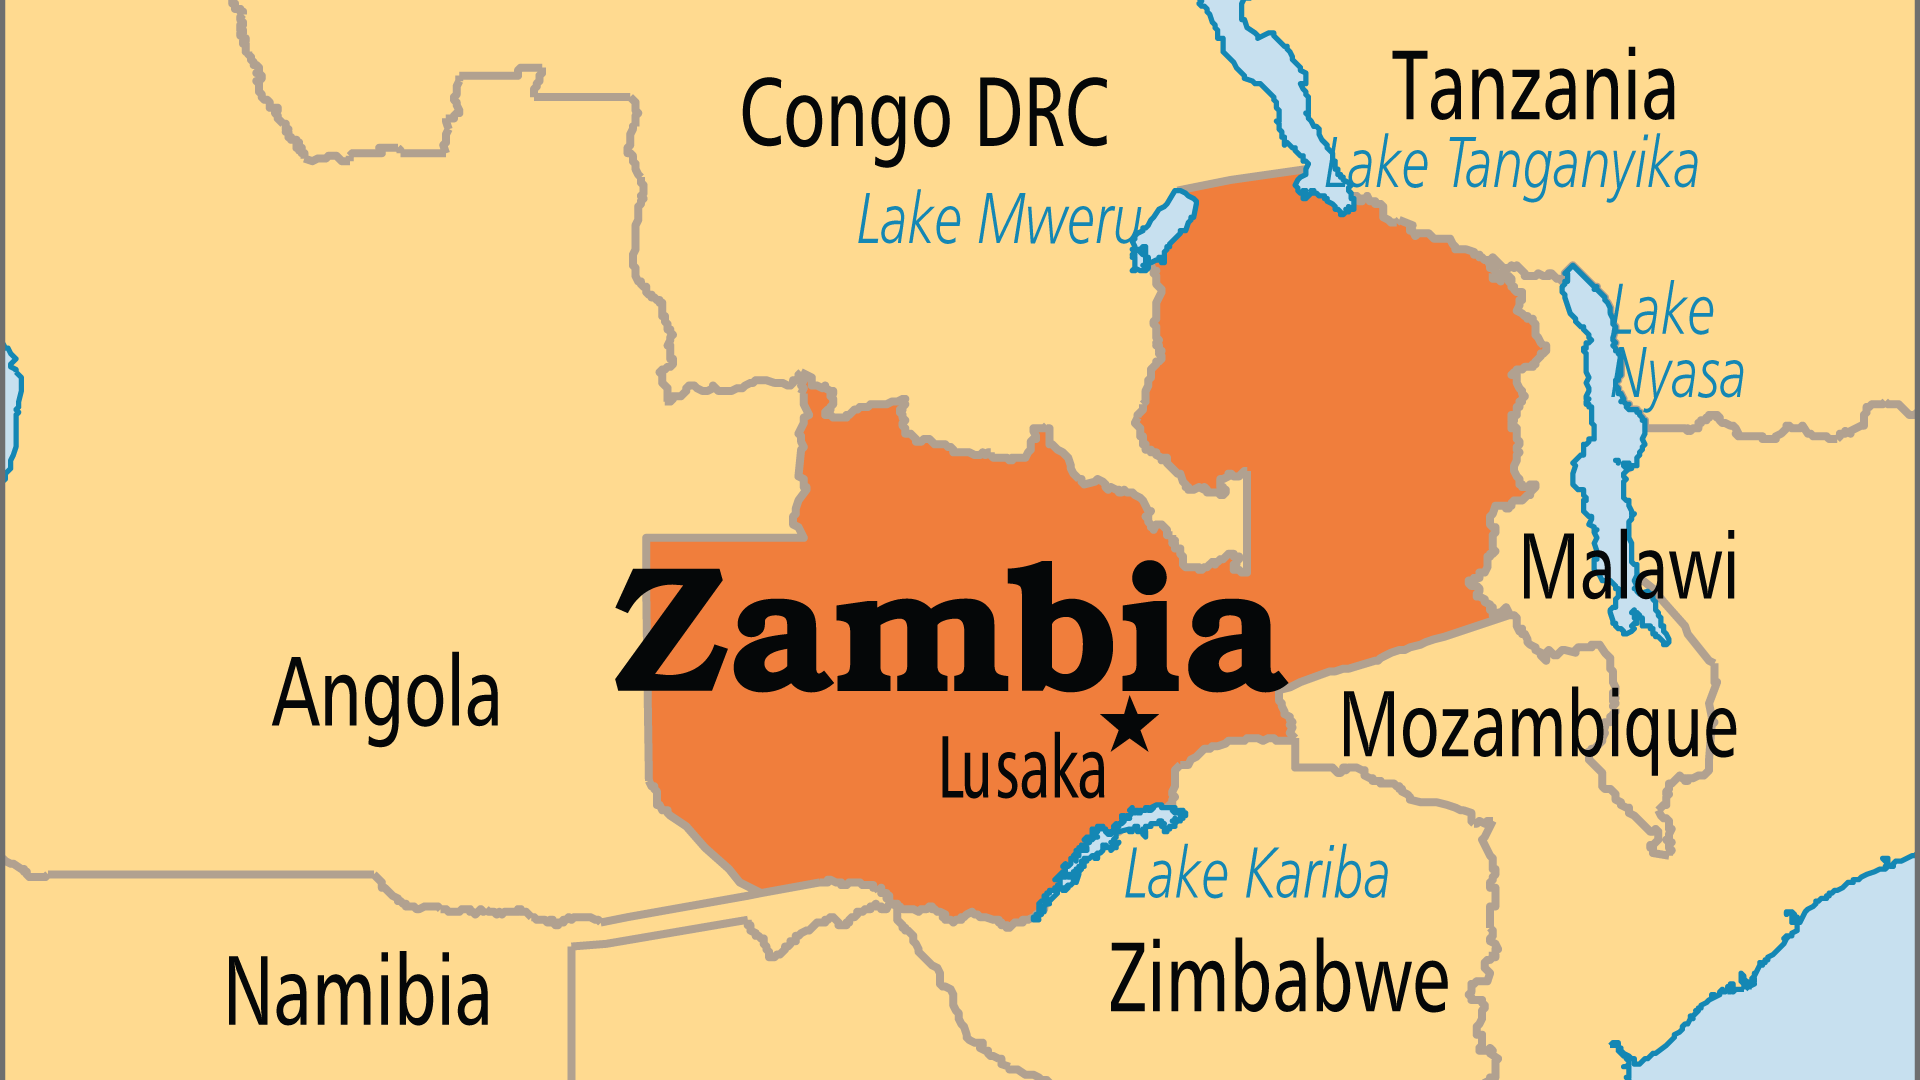 Zambia (Operation World)